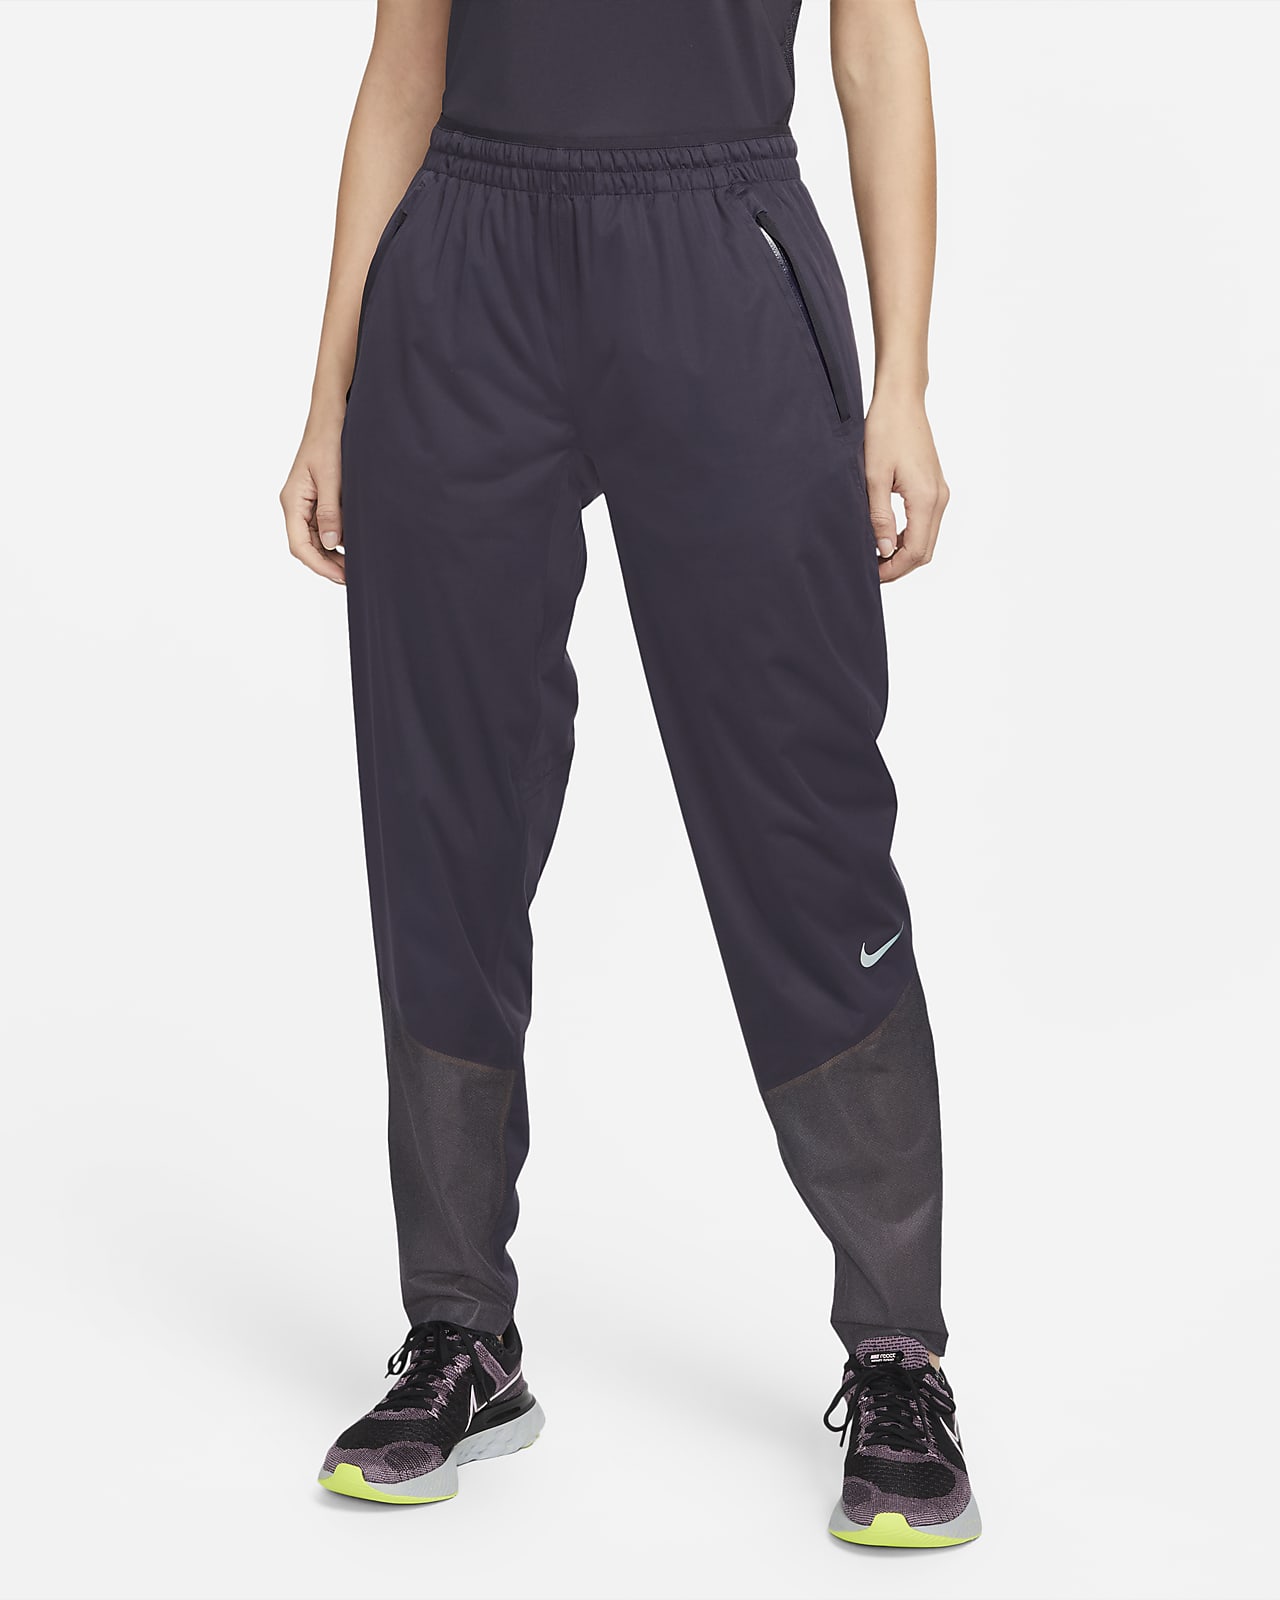 Pantalon de running Nike Storm-FIT ADV Run Division pour Femme